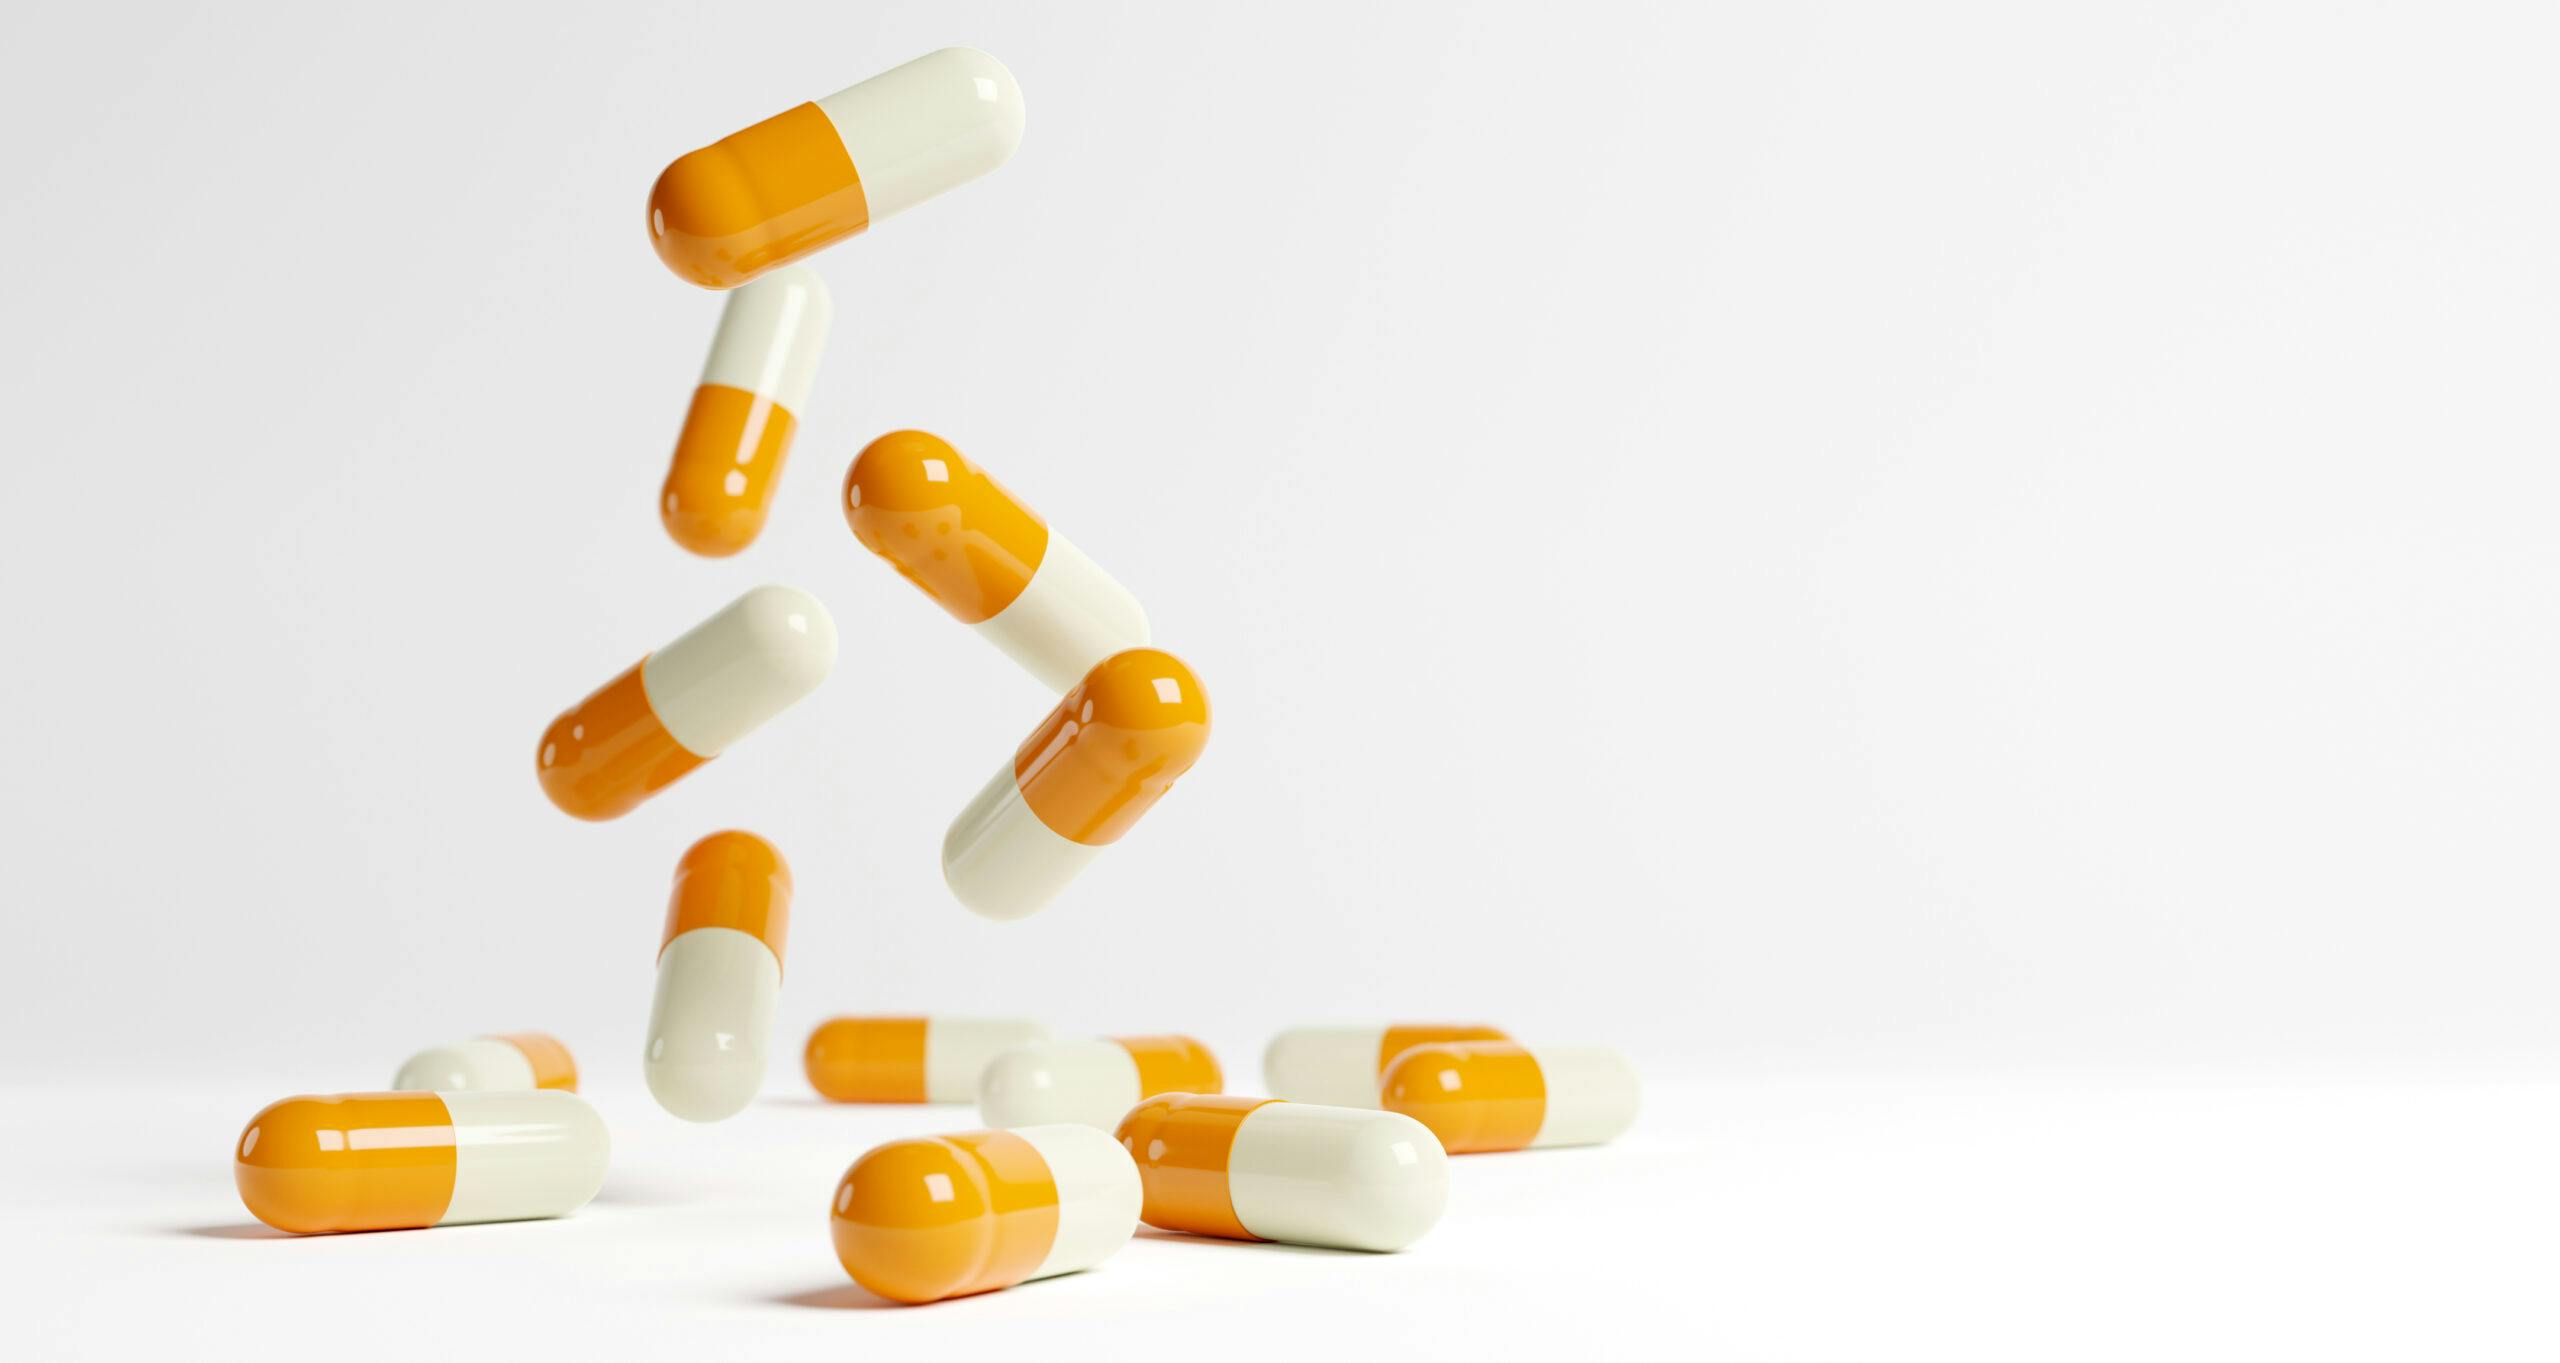 yellow and white capsule pills barbiturates